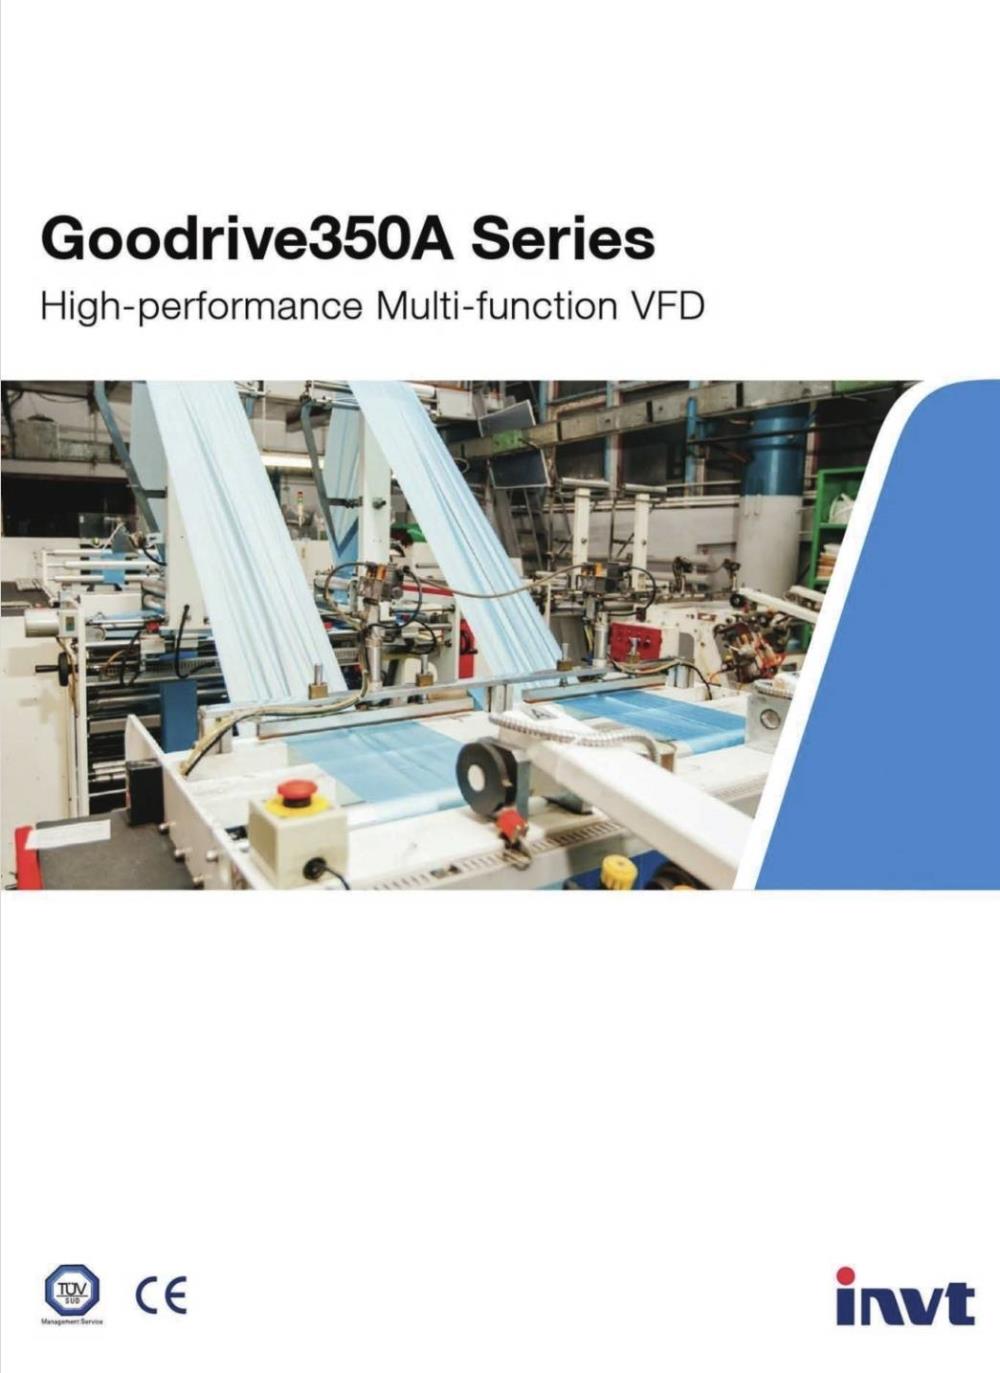 INVERTER "INVT" : GD350A Series